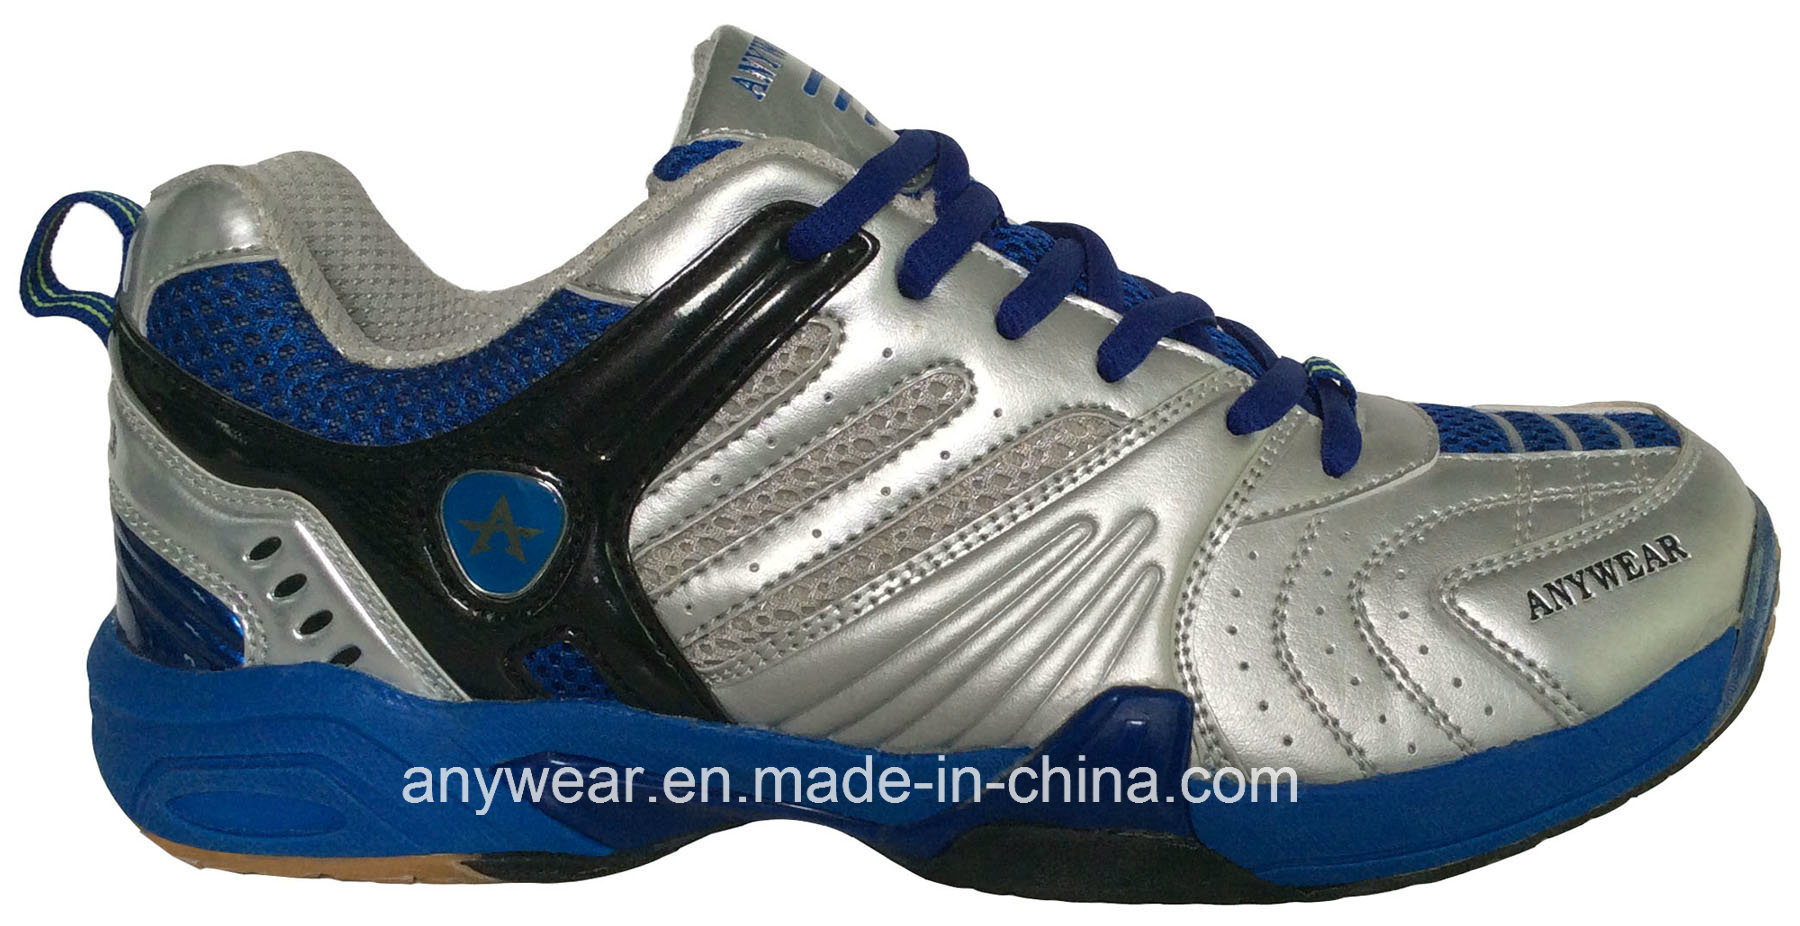 Men's Court Shoes Badminton Table Tennis Footwear (815-9114)